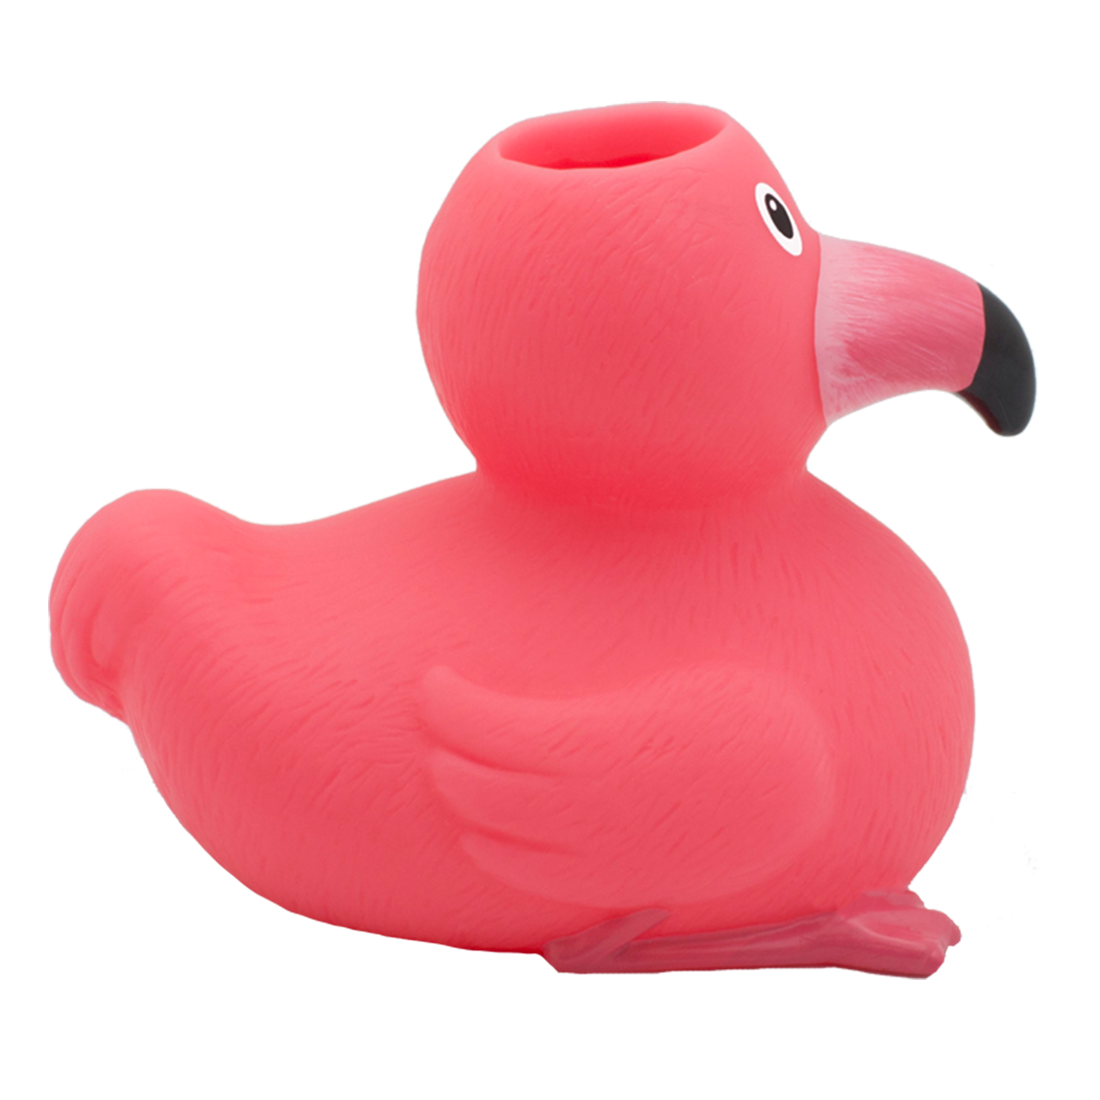 LILALU Share Happiness – Badeente für Kinder und Erwachsene – Quietscheente  – Flamingo Ente